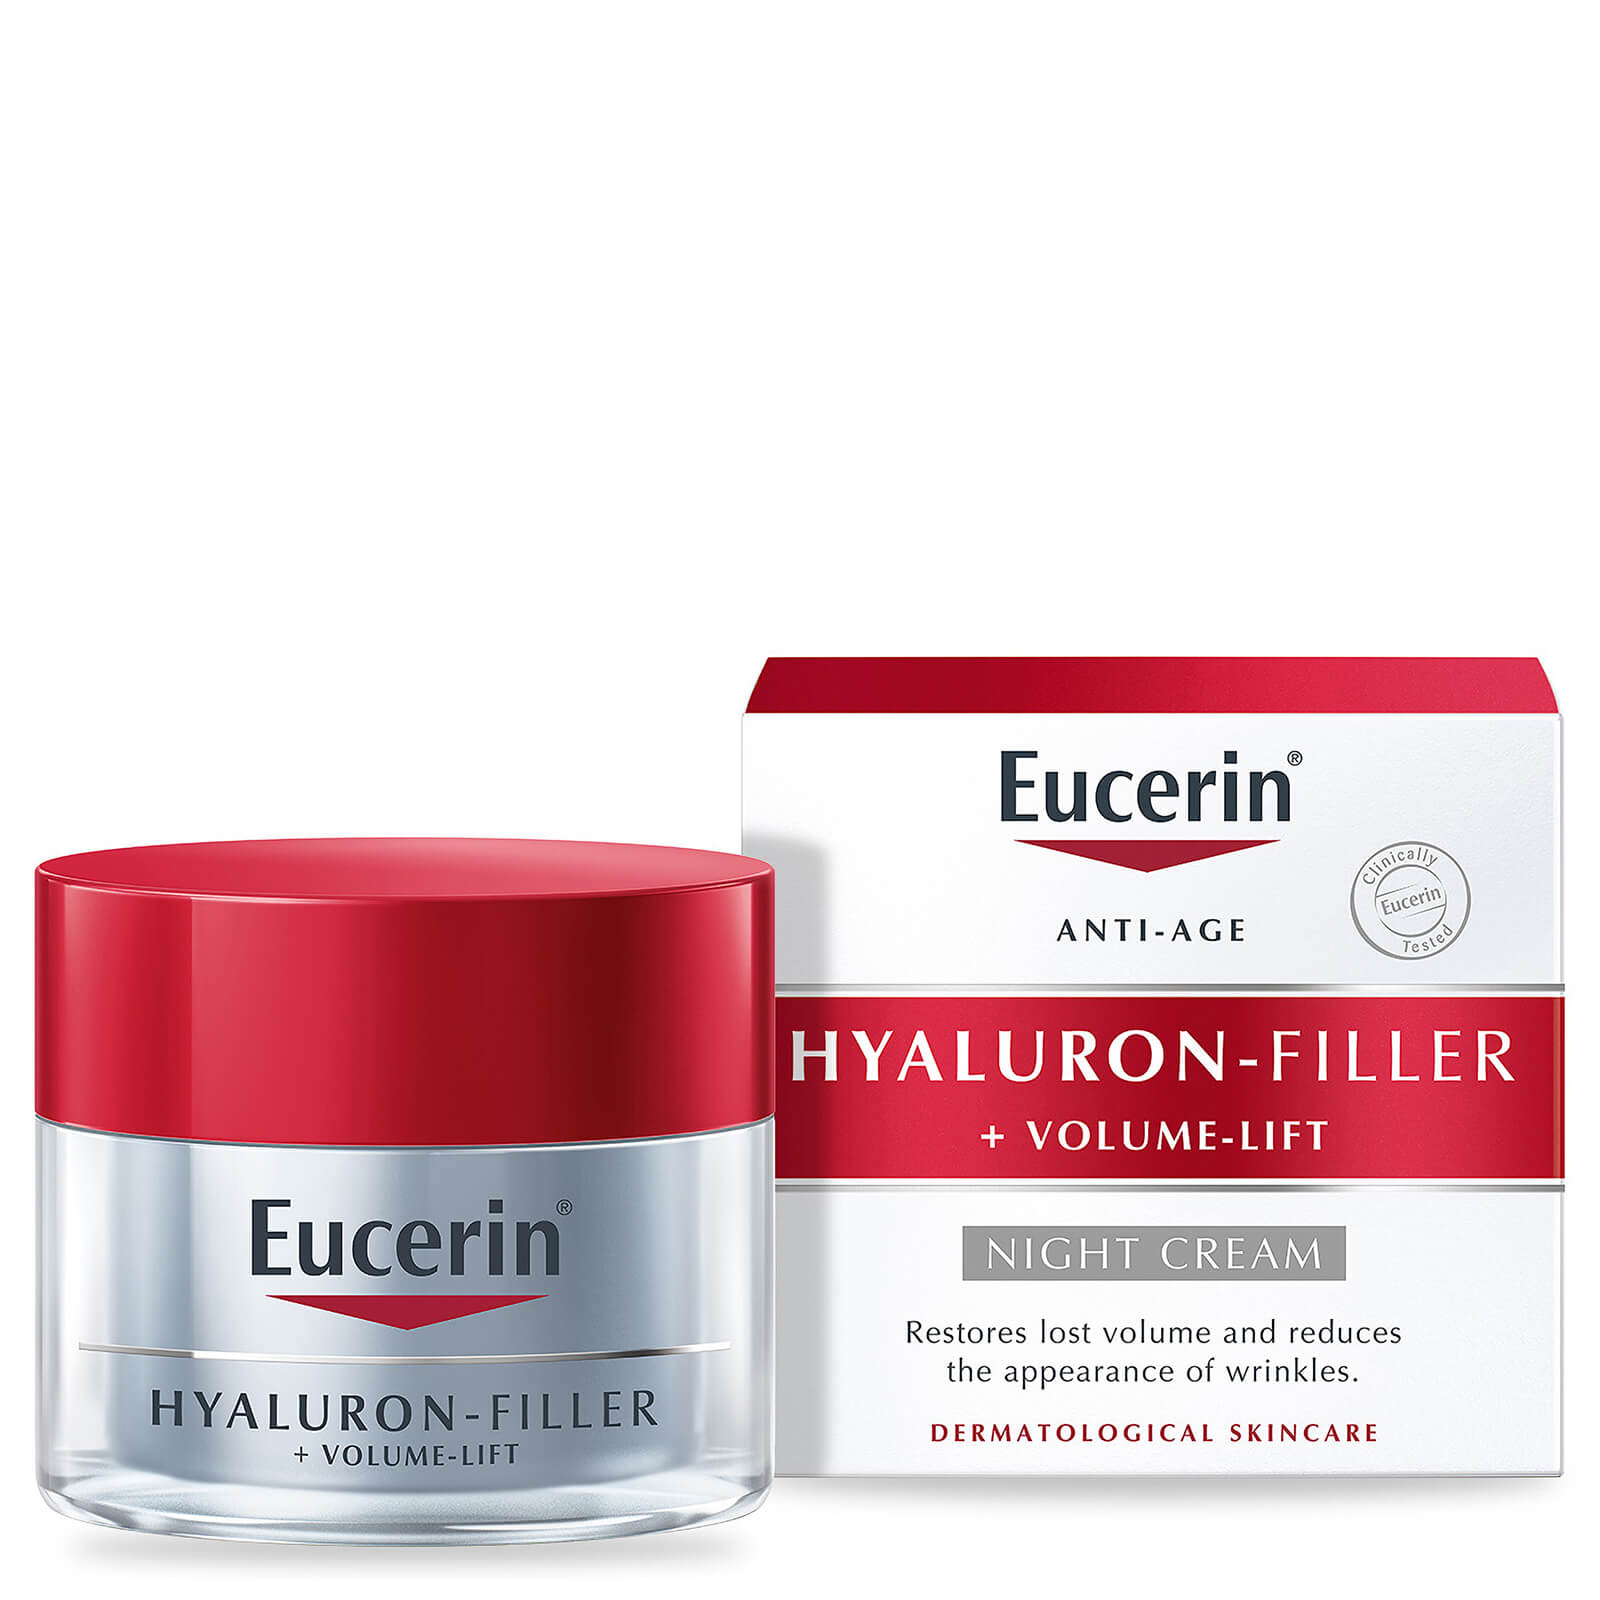 Image of Eucerin Hyaluron-Filler + Volume-Lift Night Cream 50ml